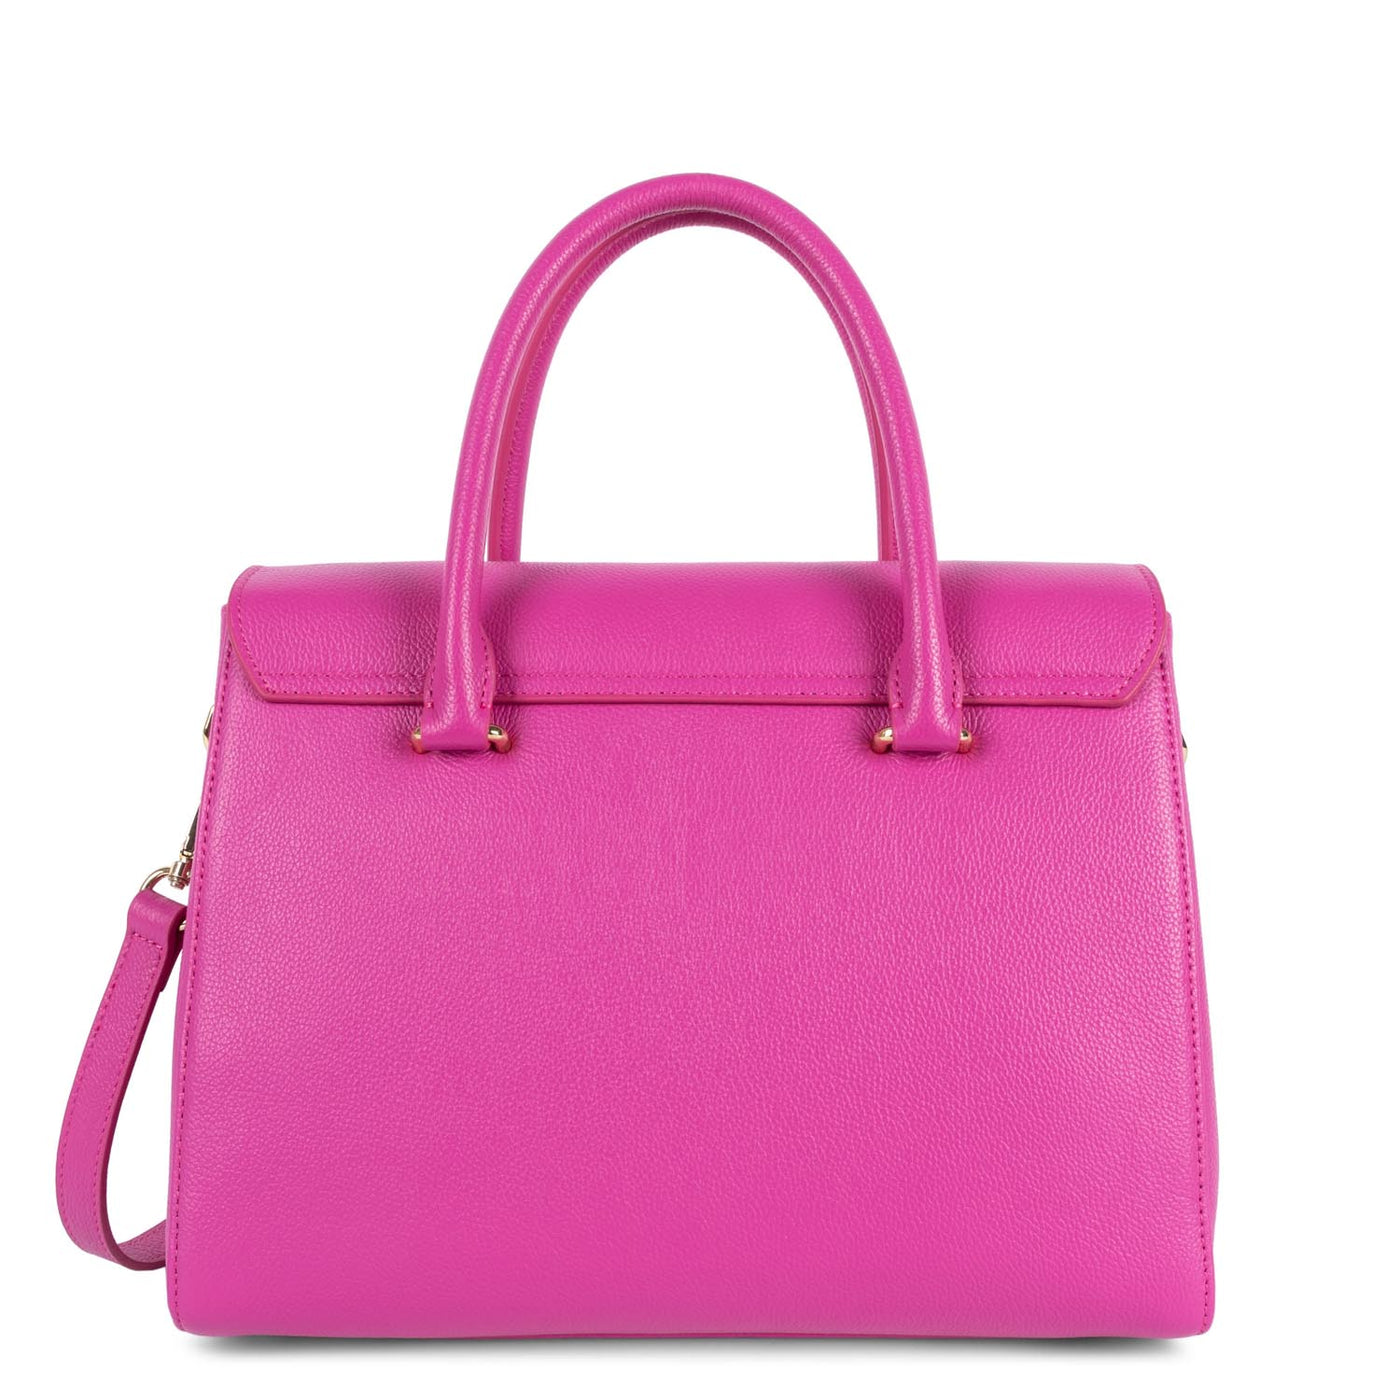 large handbag - foulonné milano #couleur_orchide